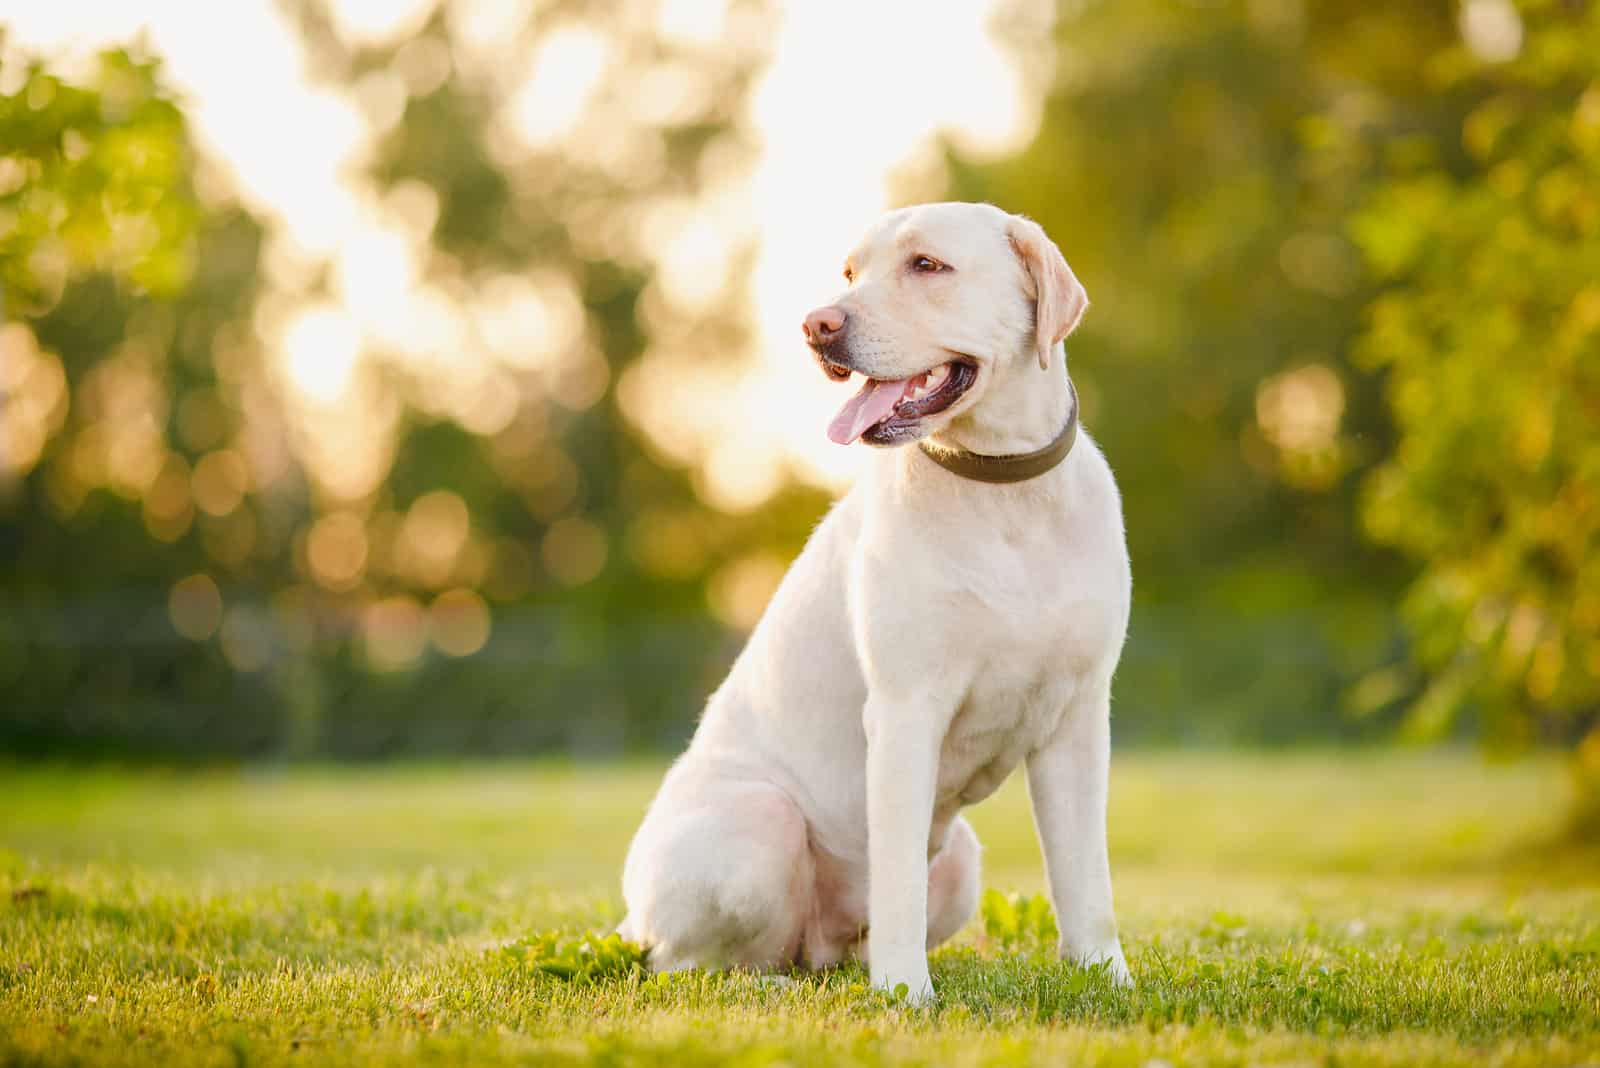  happy purebred labrador retriever dog outdoors